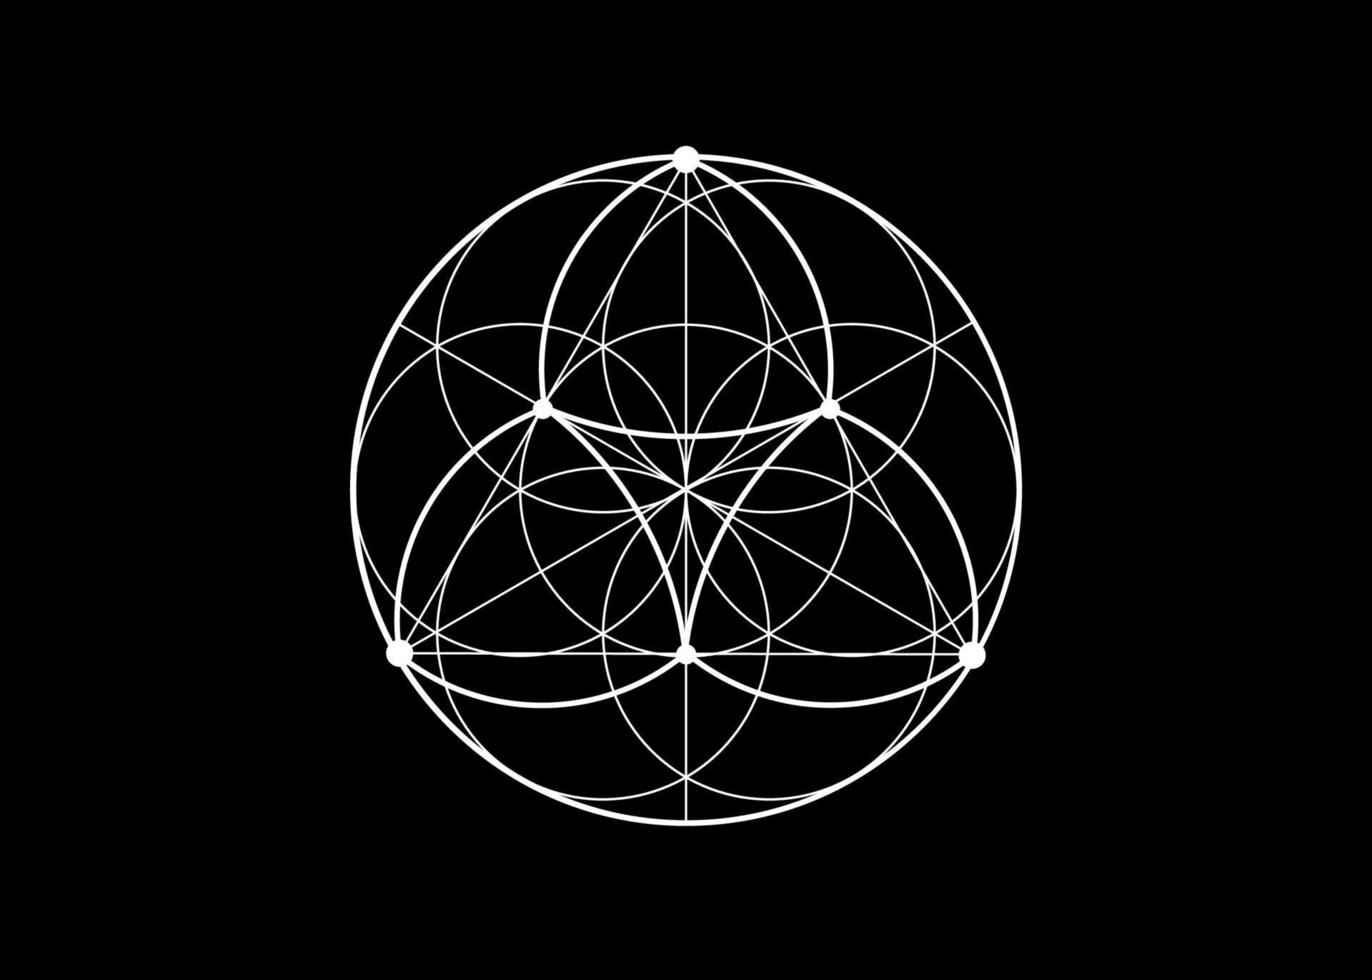 fleur de graine de l'icône de lotus de vie, géométrie sacrée du mandala yantra, symbole de tatouage d'harmonie et d'équilibre. talisman mystique, vecteur de lignes blanches isolé sur fond noir